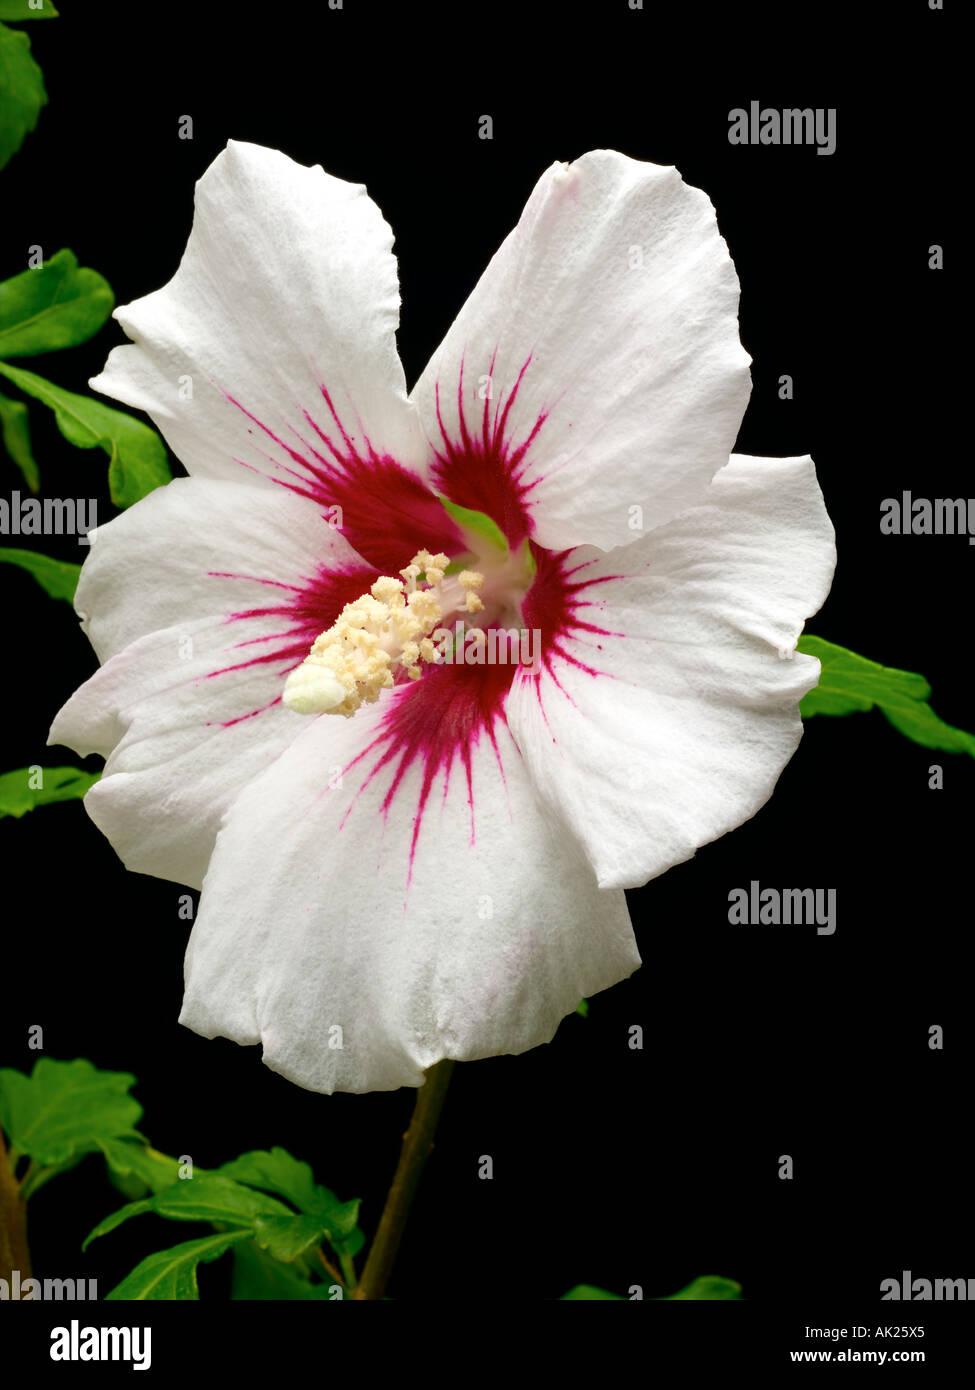 hibiscus flower Stock Photo